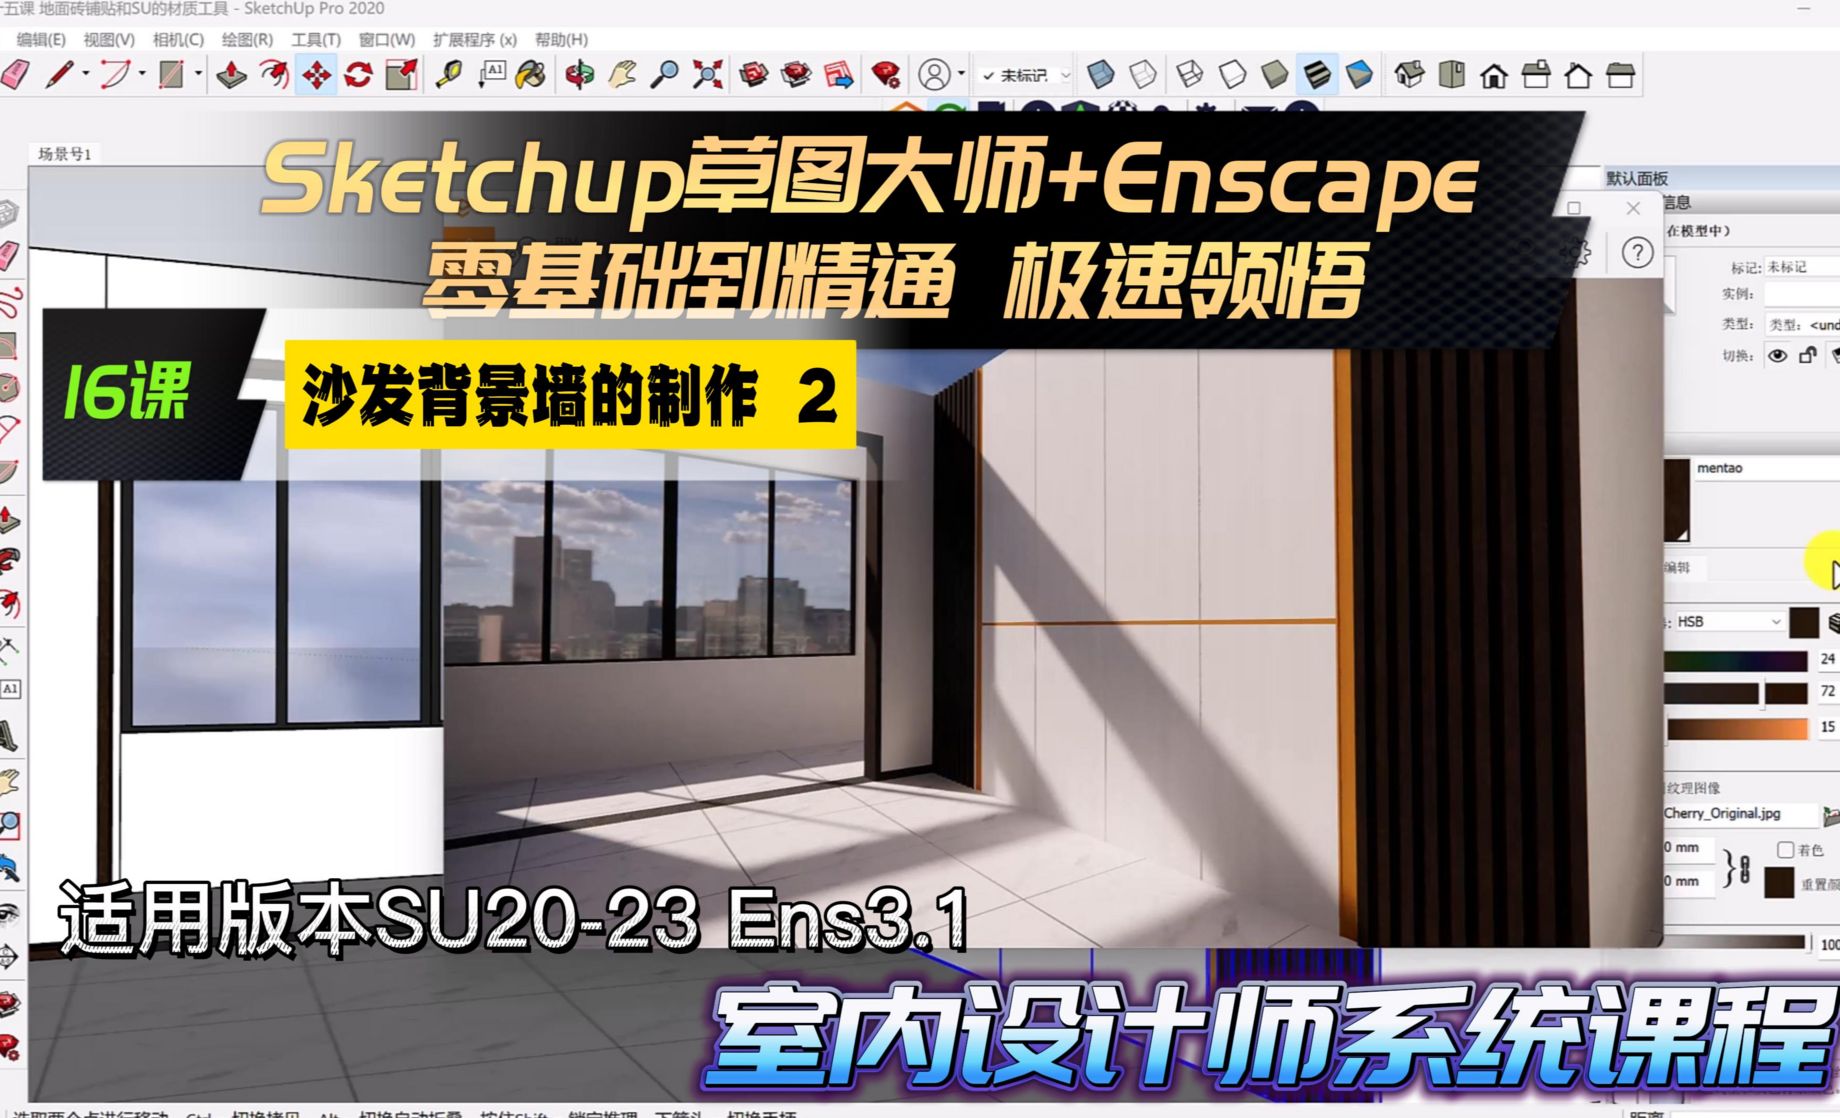 Sketchup+Enscape室内设计极速领悟-沙发背景墙制作2